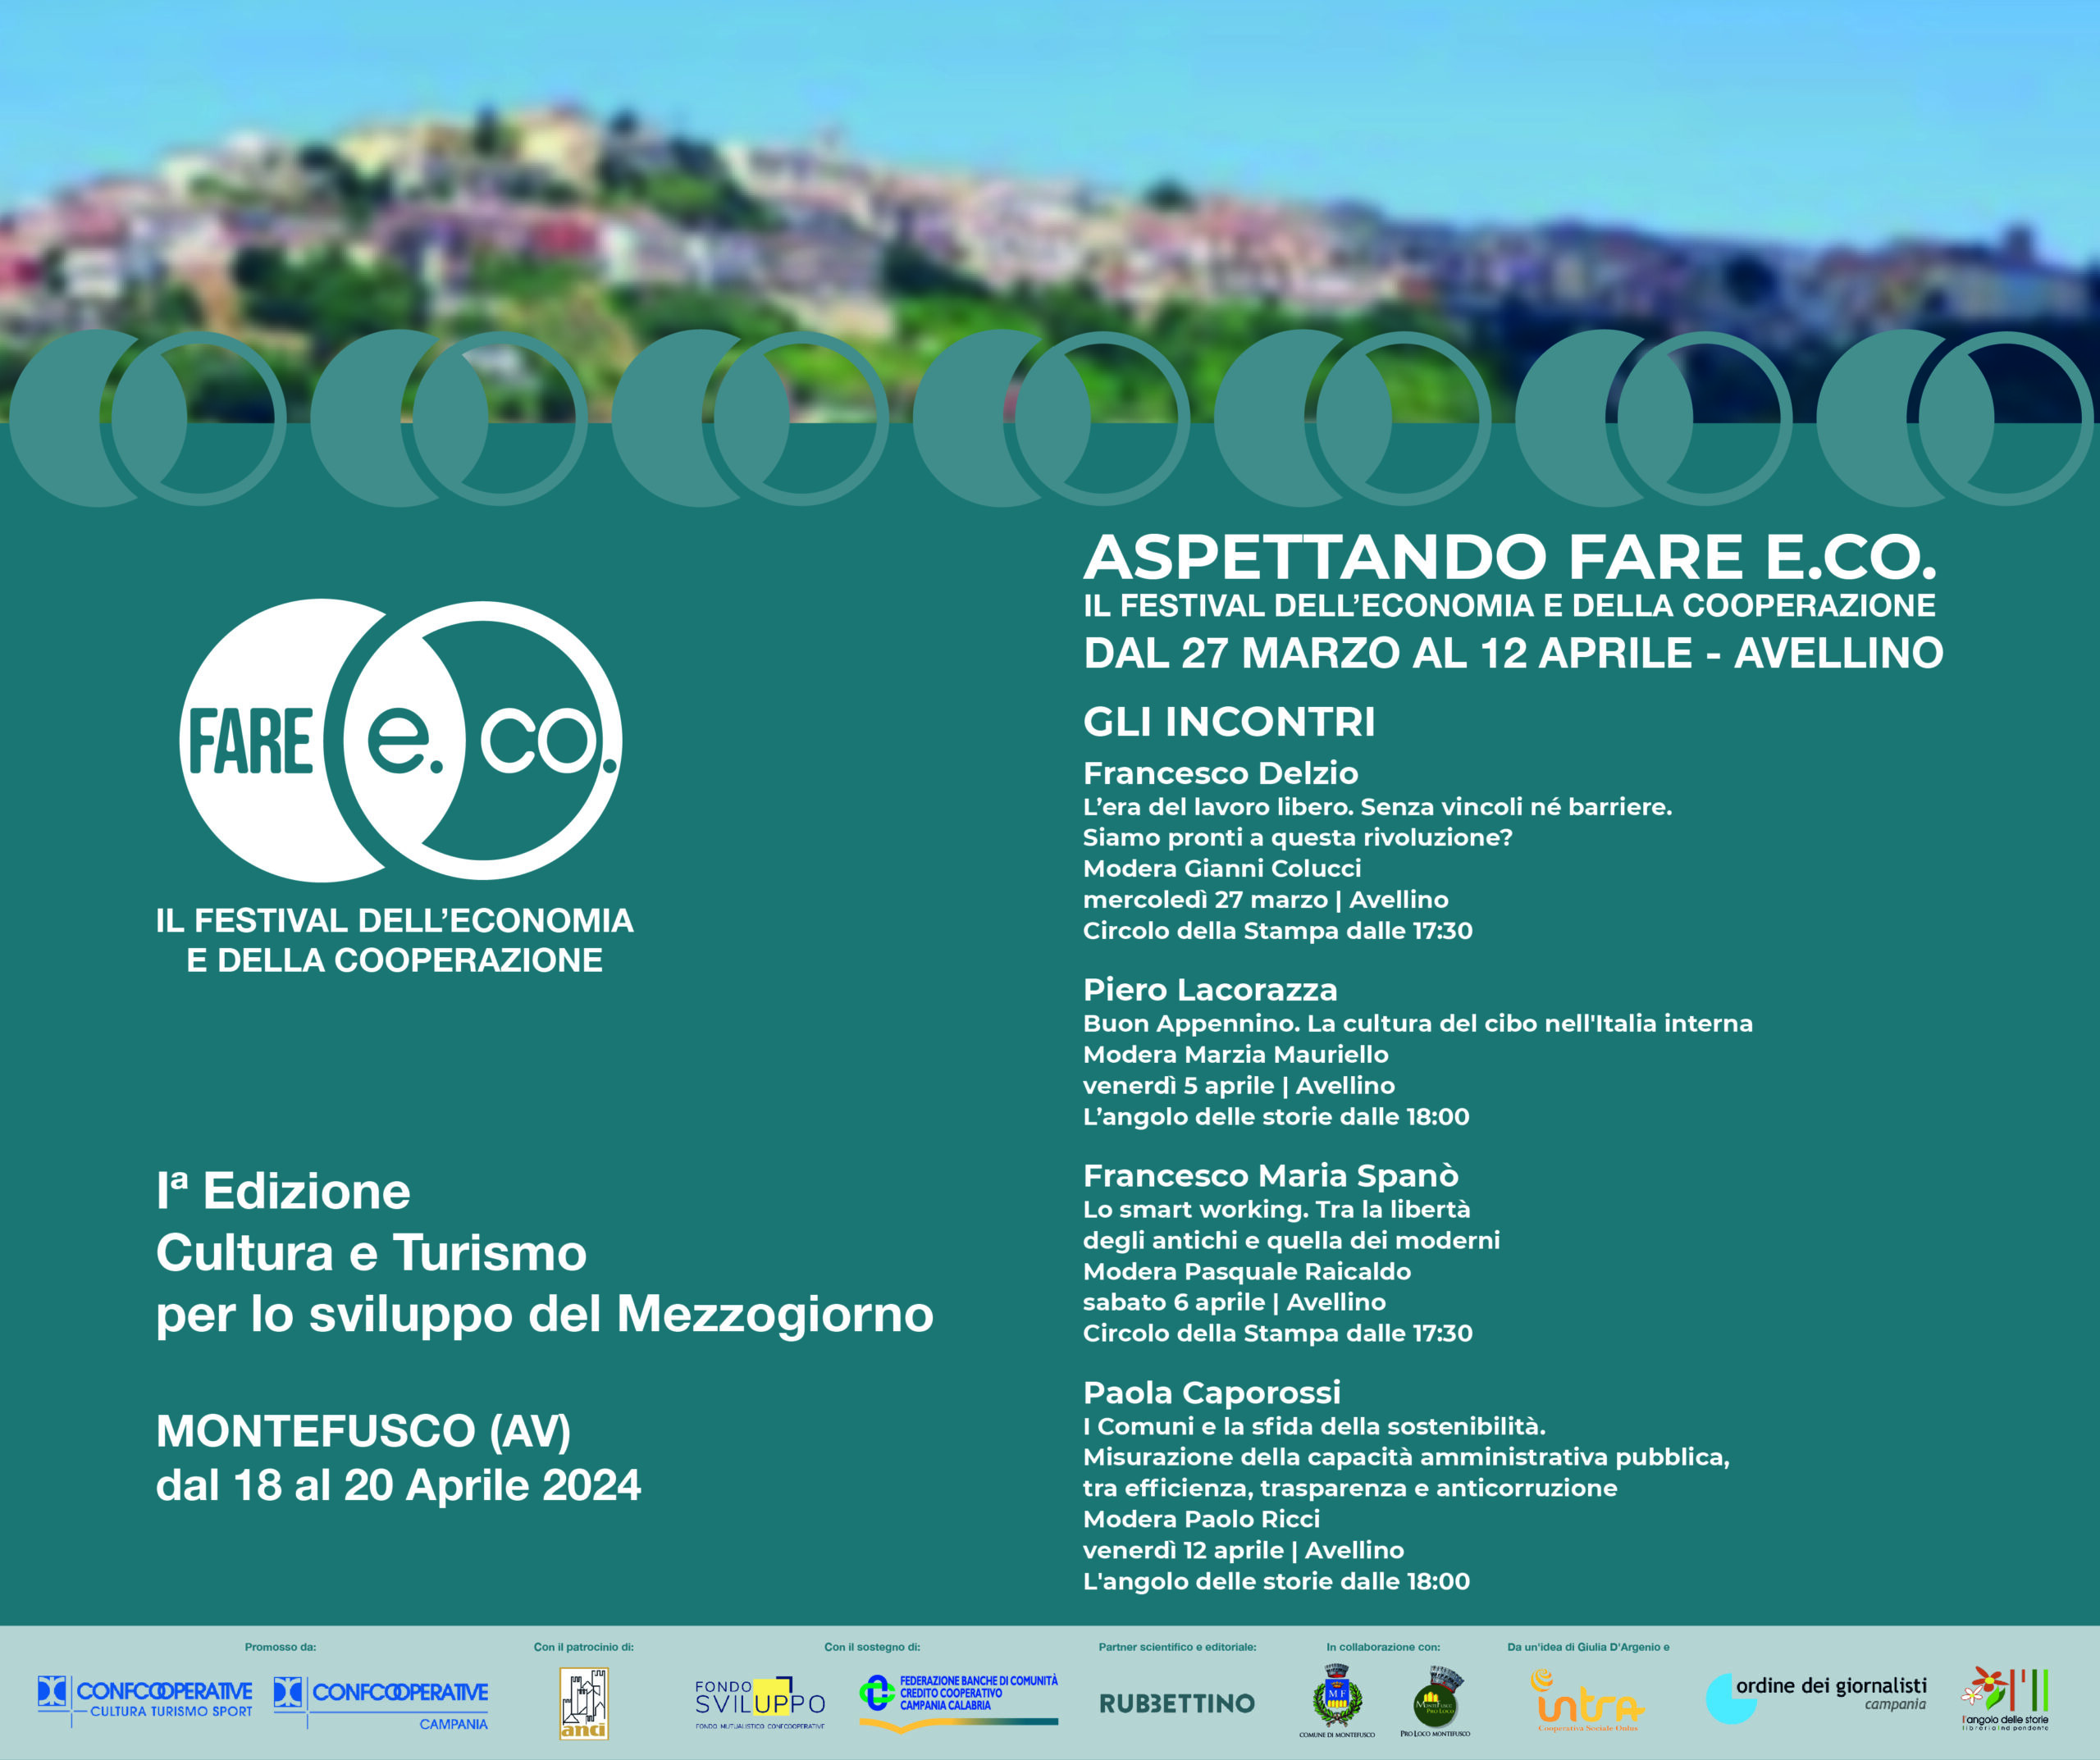 Aspettando Fare E.CO.: ad Avellino, gli appuntamenti in attesa della prima edizione del Festival dell’Economia e della Cooperazione